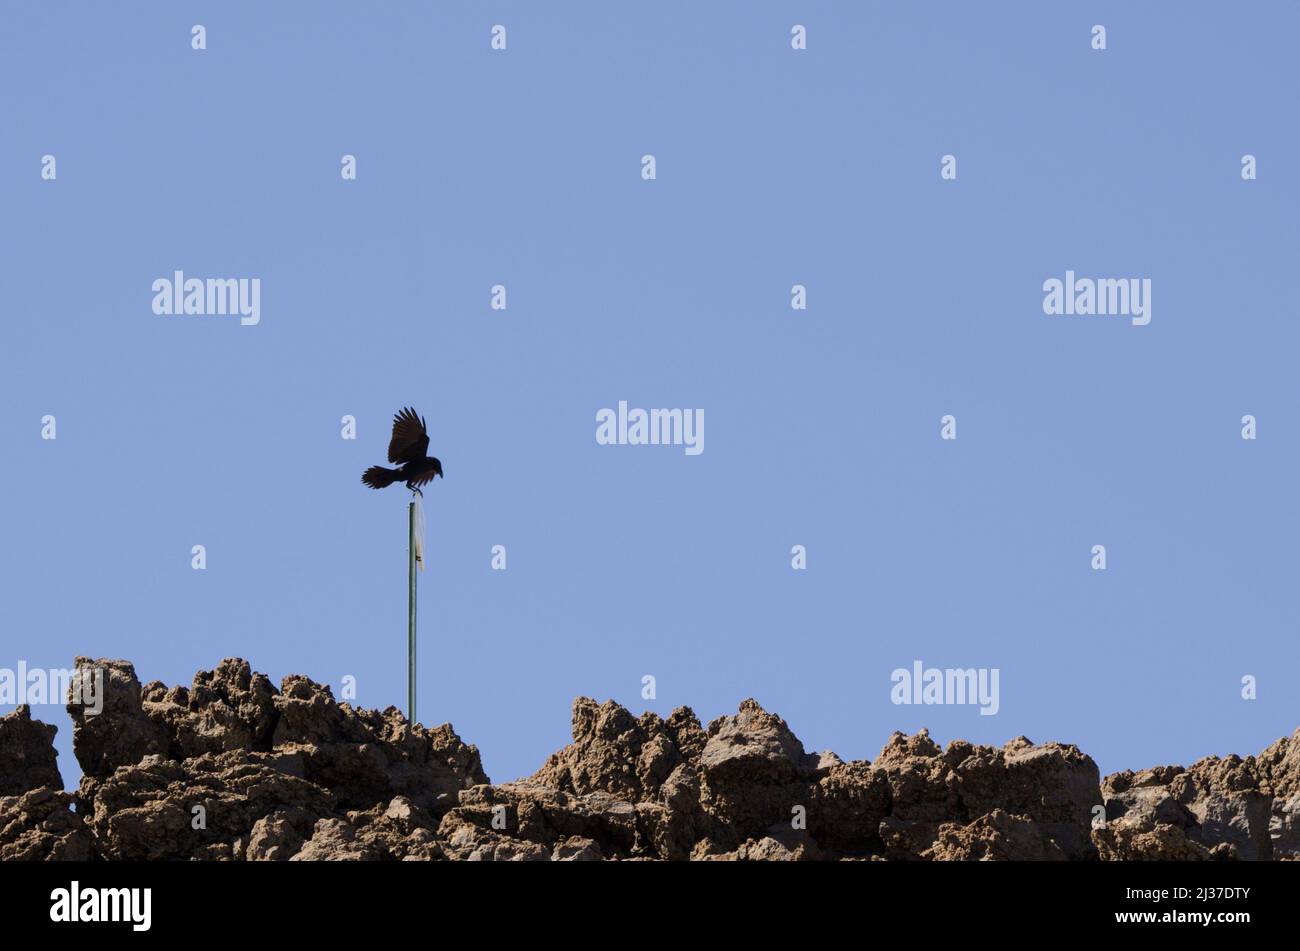 Kanarische Inseln Raben Corvus corax canariensis auf einem informativen Poster. Nationalpark Caldera de Taburiente. La Palma. Kanarische Inseln. Spanien. Stockfoto